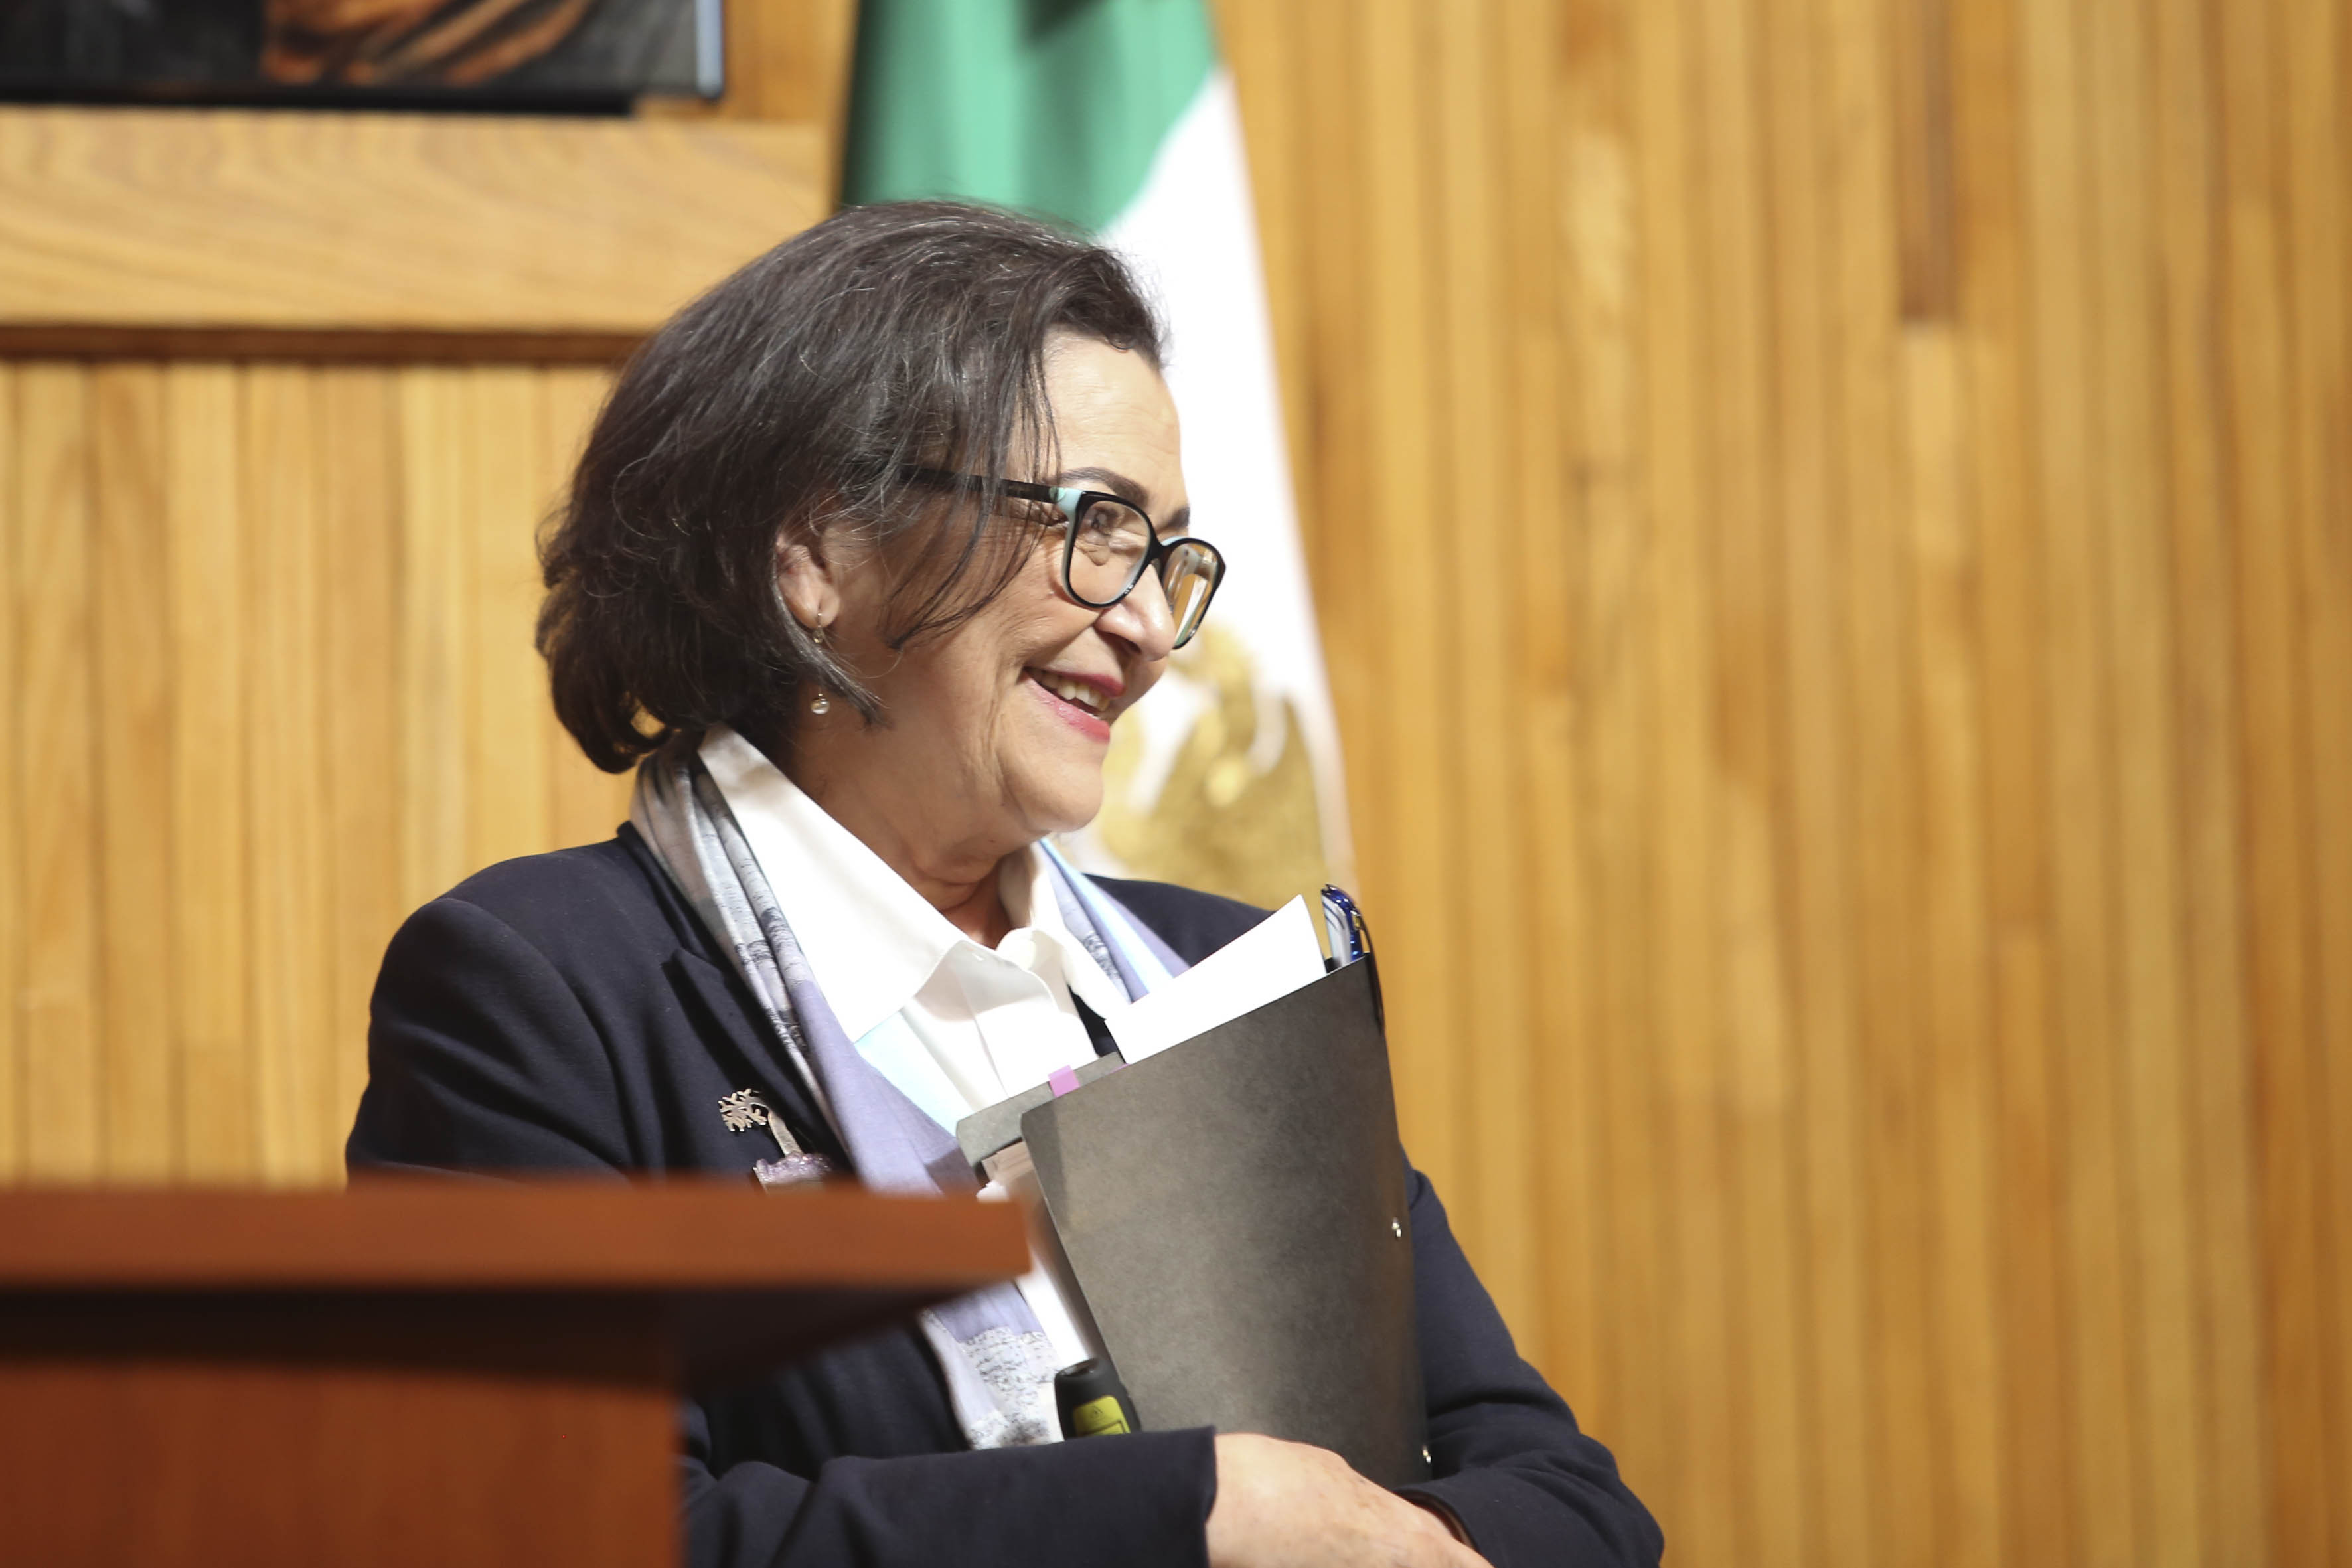 rectora para el el periodo de 2019 a 2025, Ruth Padilla, UDEG, Universidad de Guadalajara